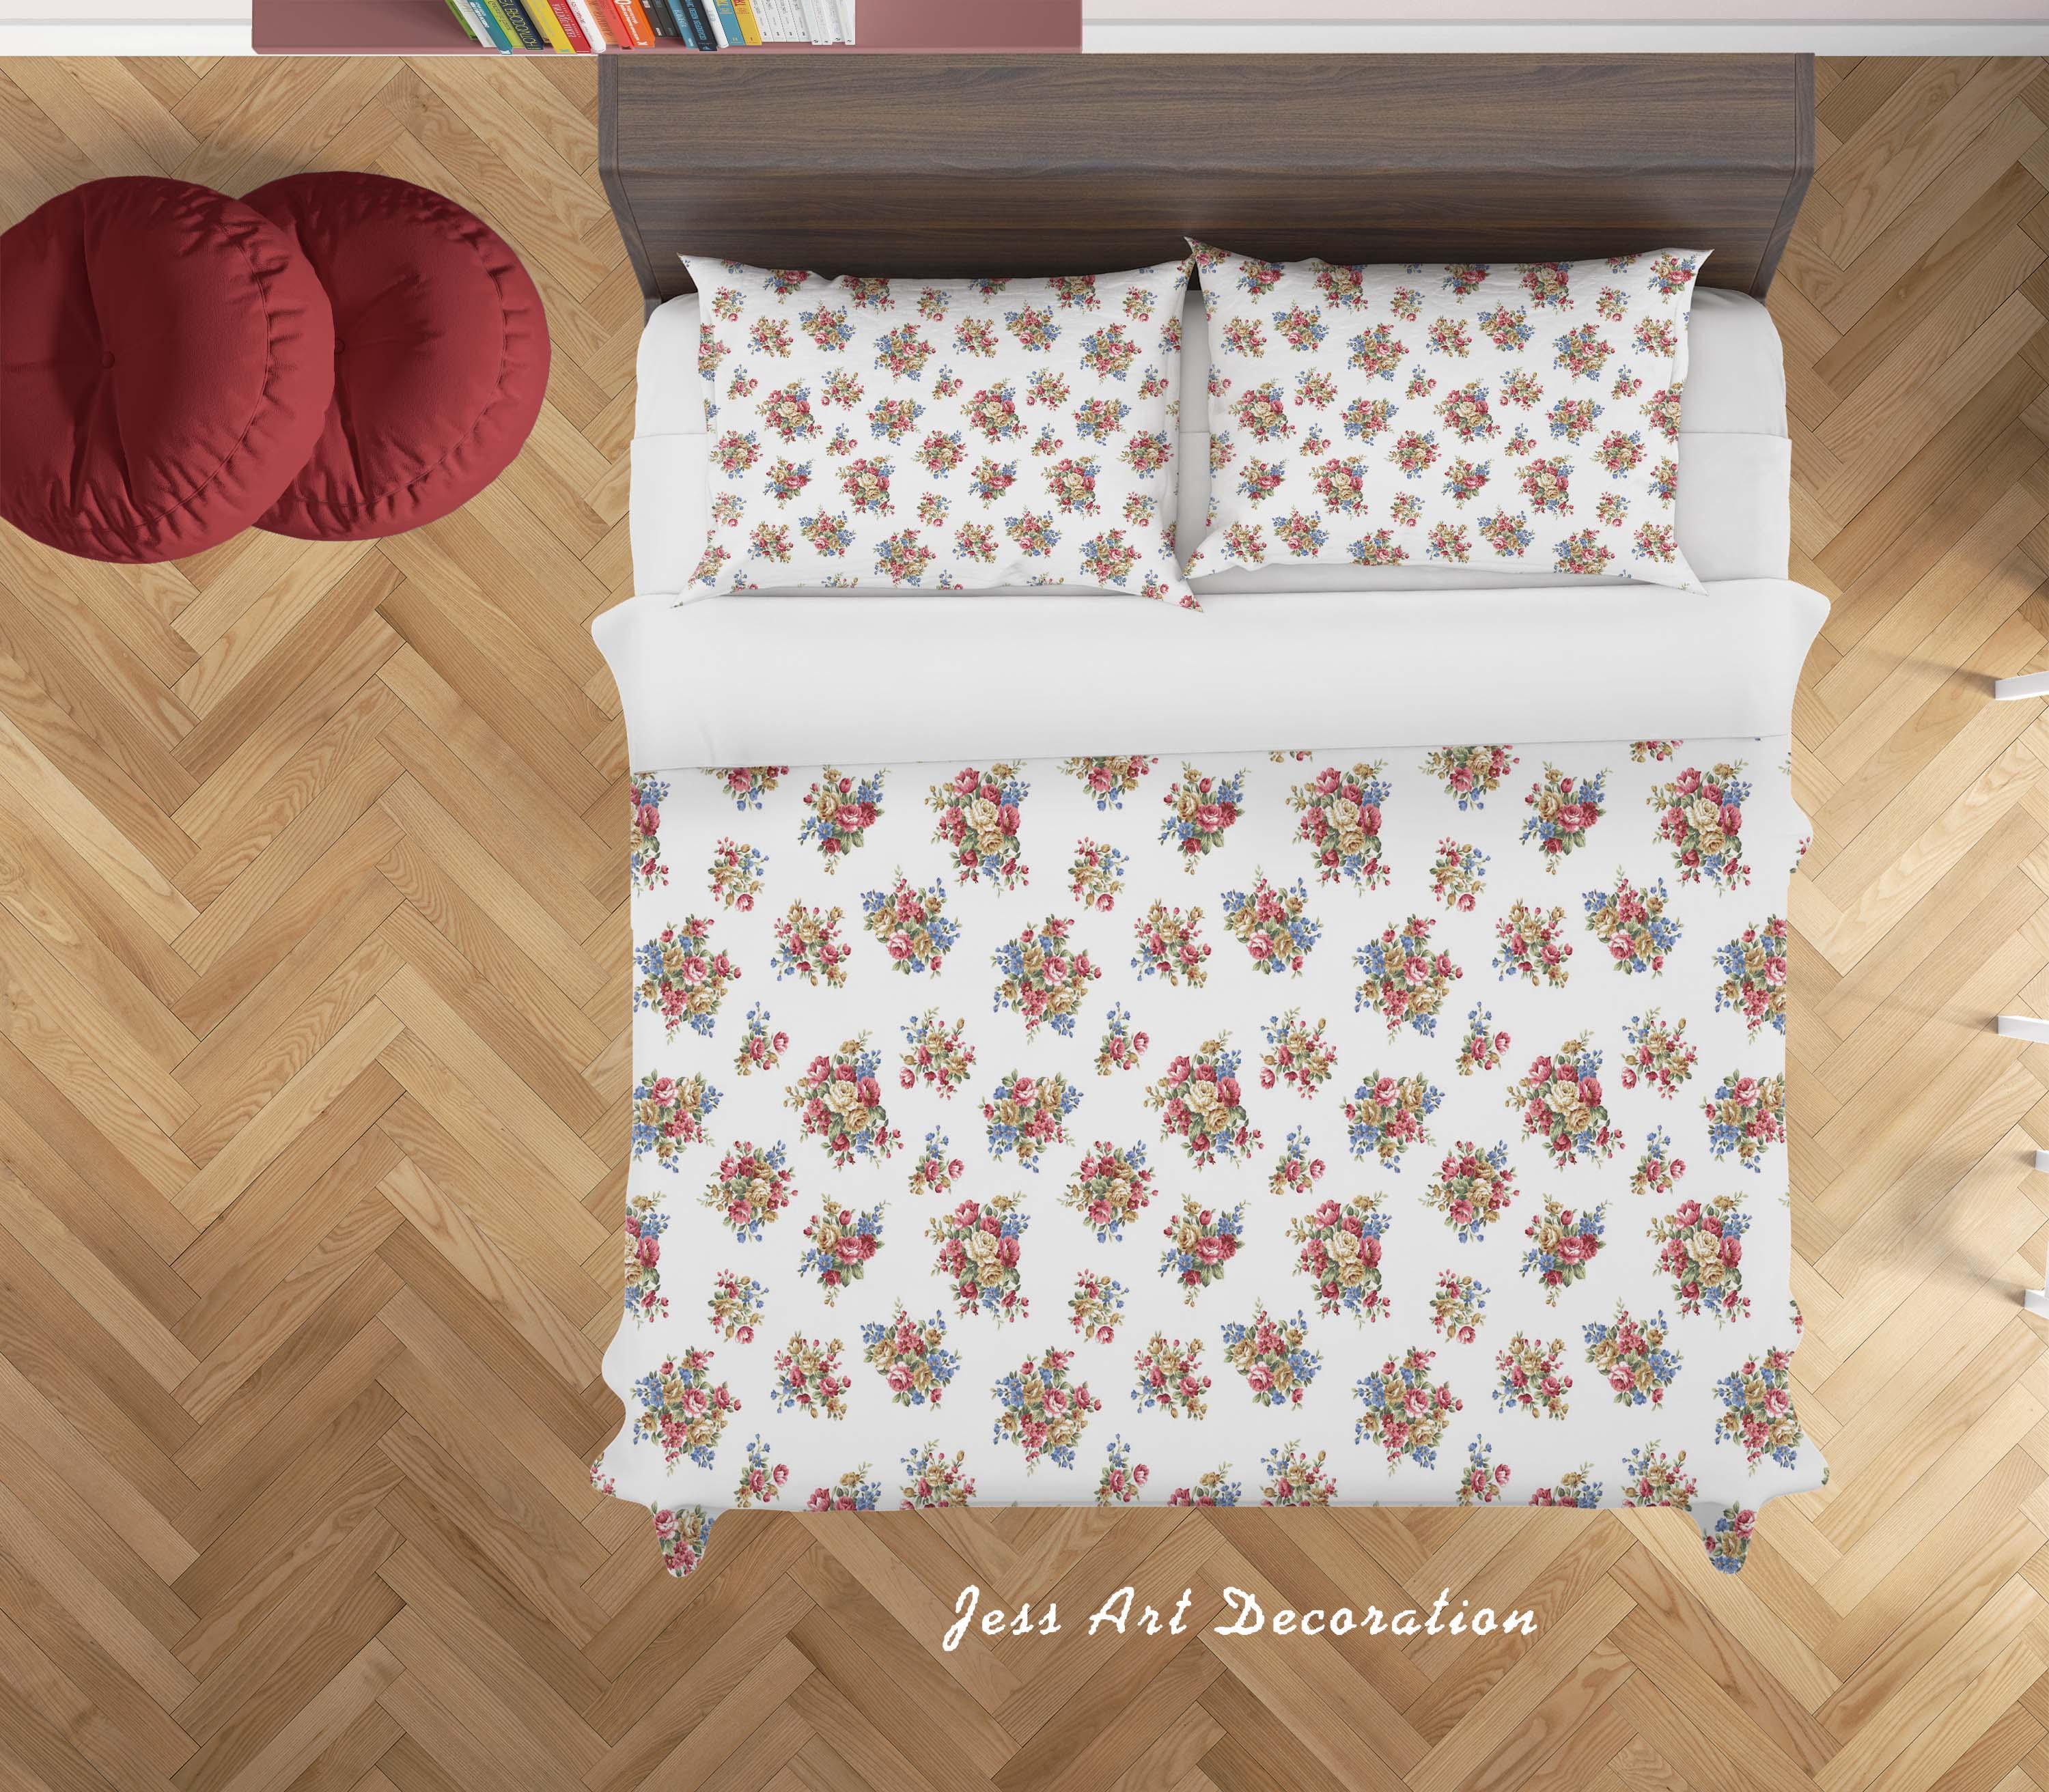 3D White Floral Quilt Cover Set Bedding Set Duvet Cover Pillowcases SF122- Jess Art Decoration